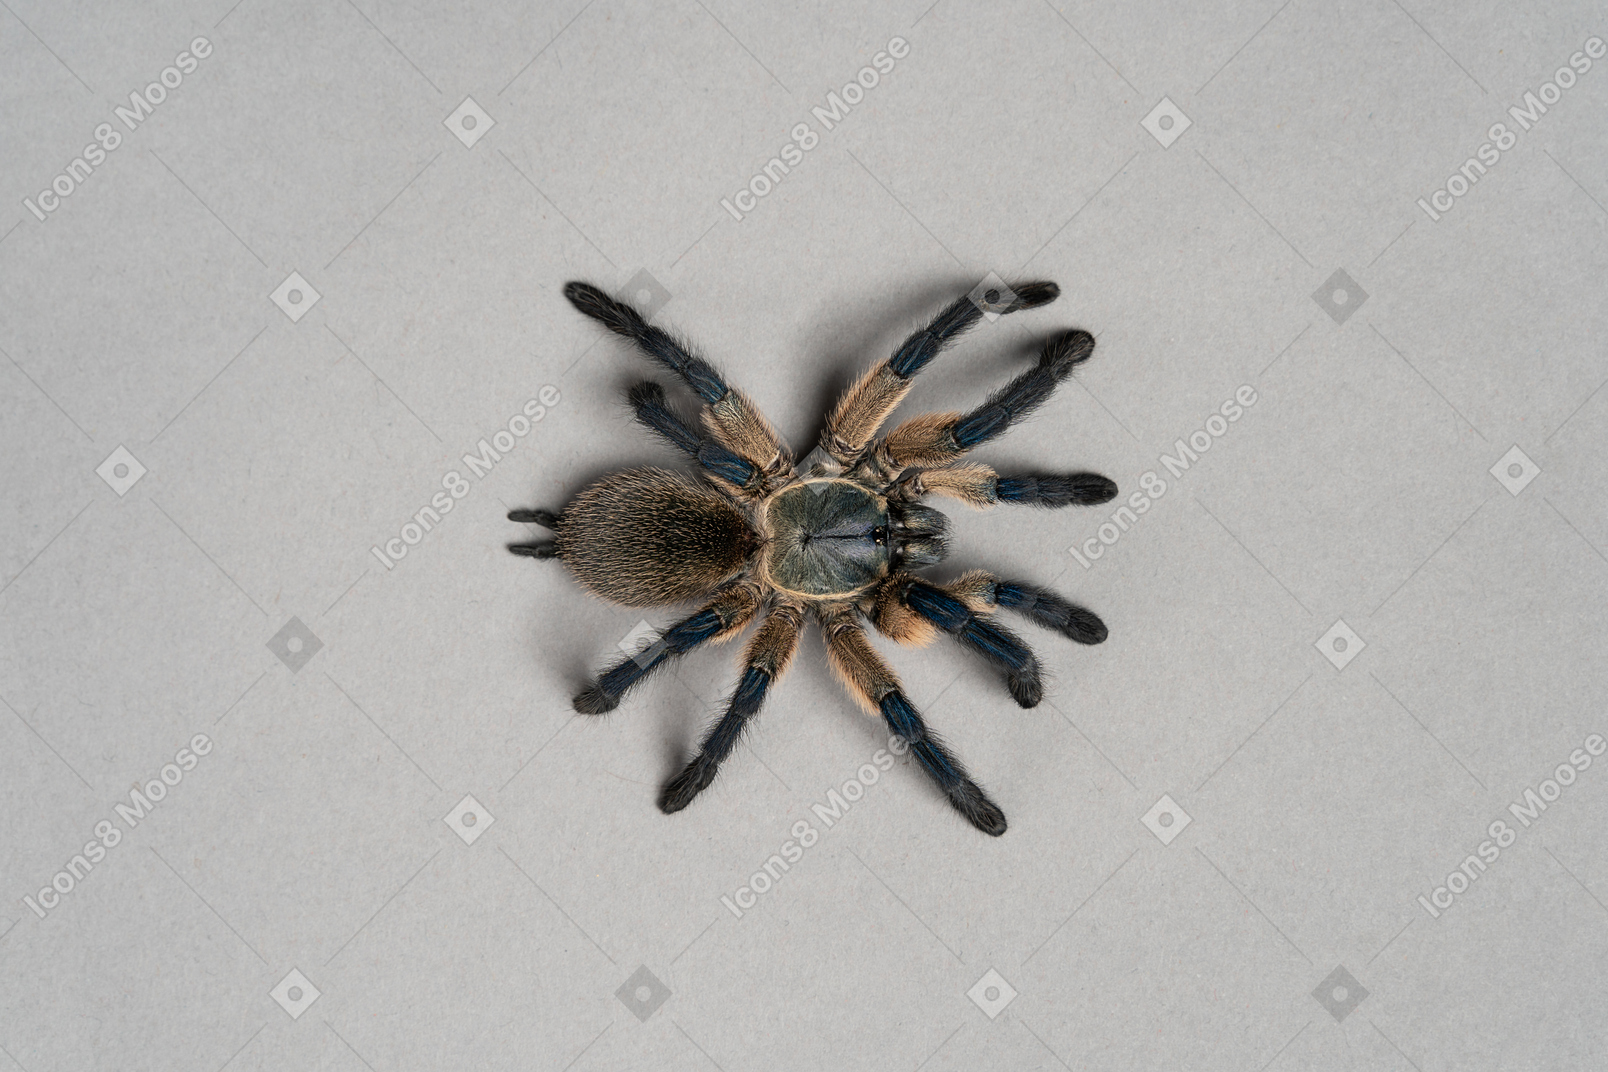 Black spider on grey background